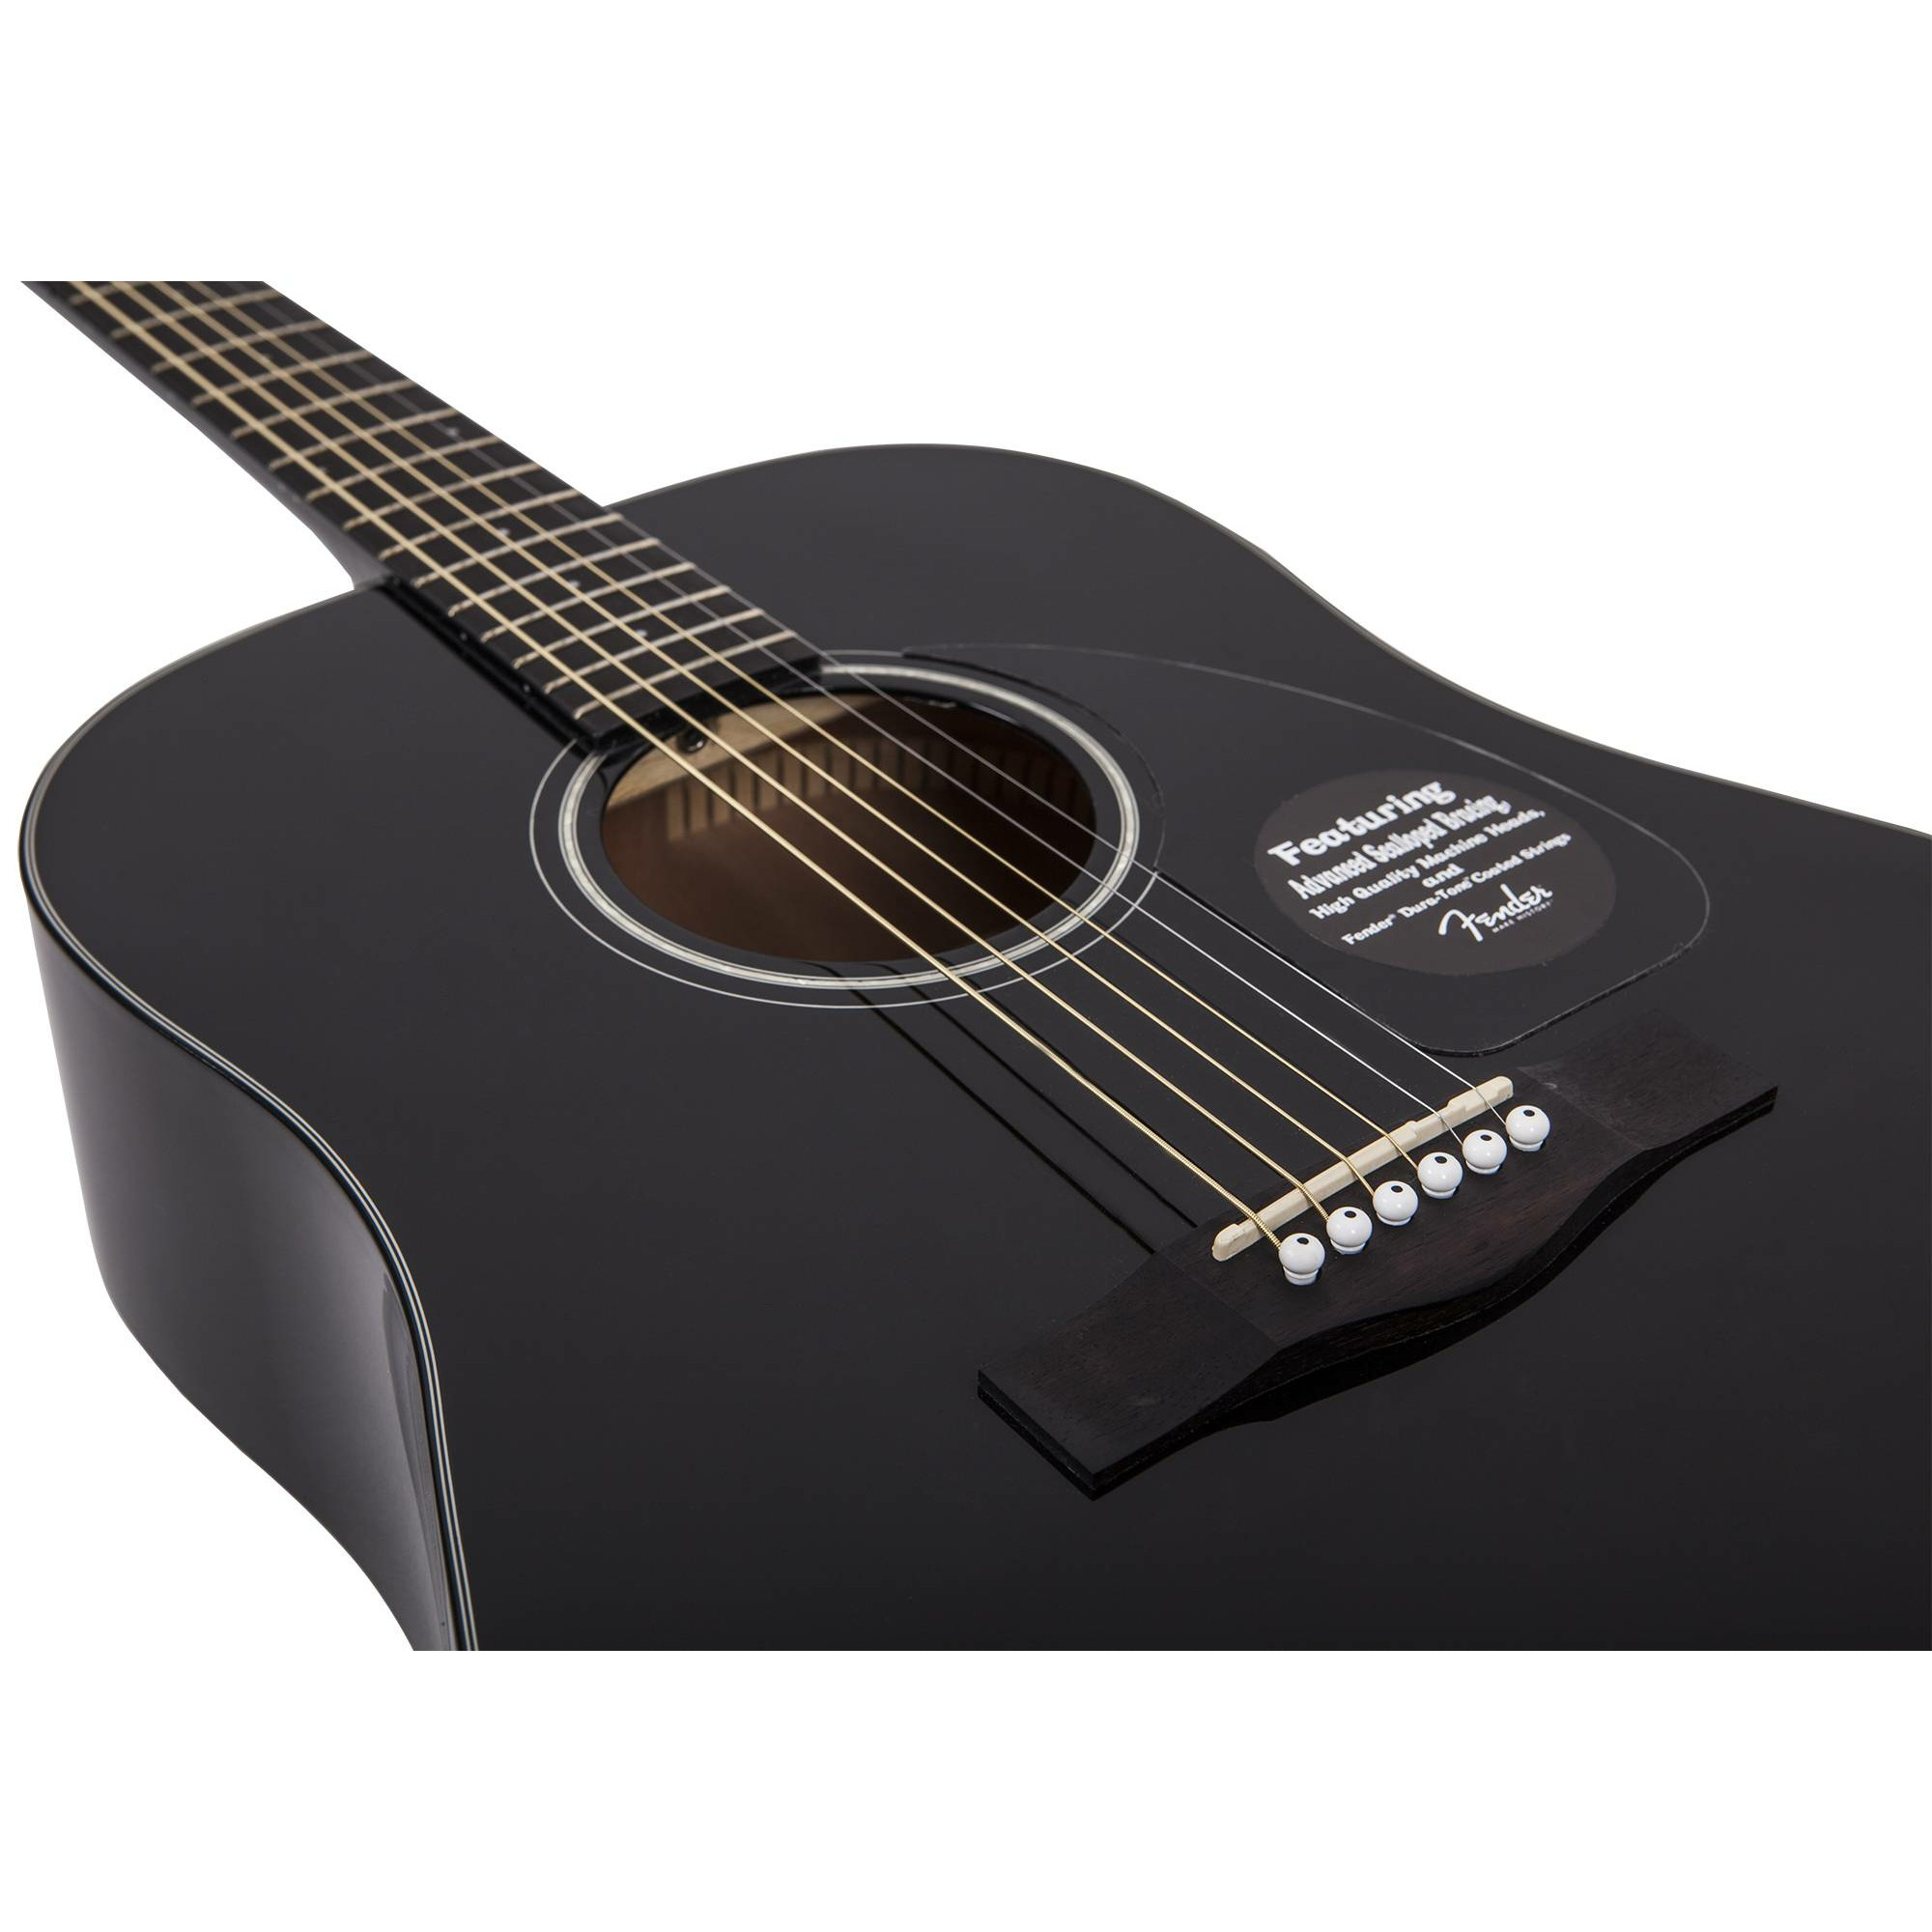 Гитара фендер сд 60. Гитара Fender CD-60s. Гитара Фендер СД 60 черная. Fender CD-60s Black. Фендер cd60 Black.